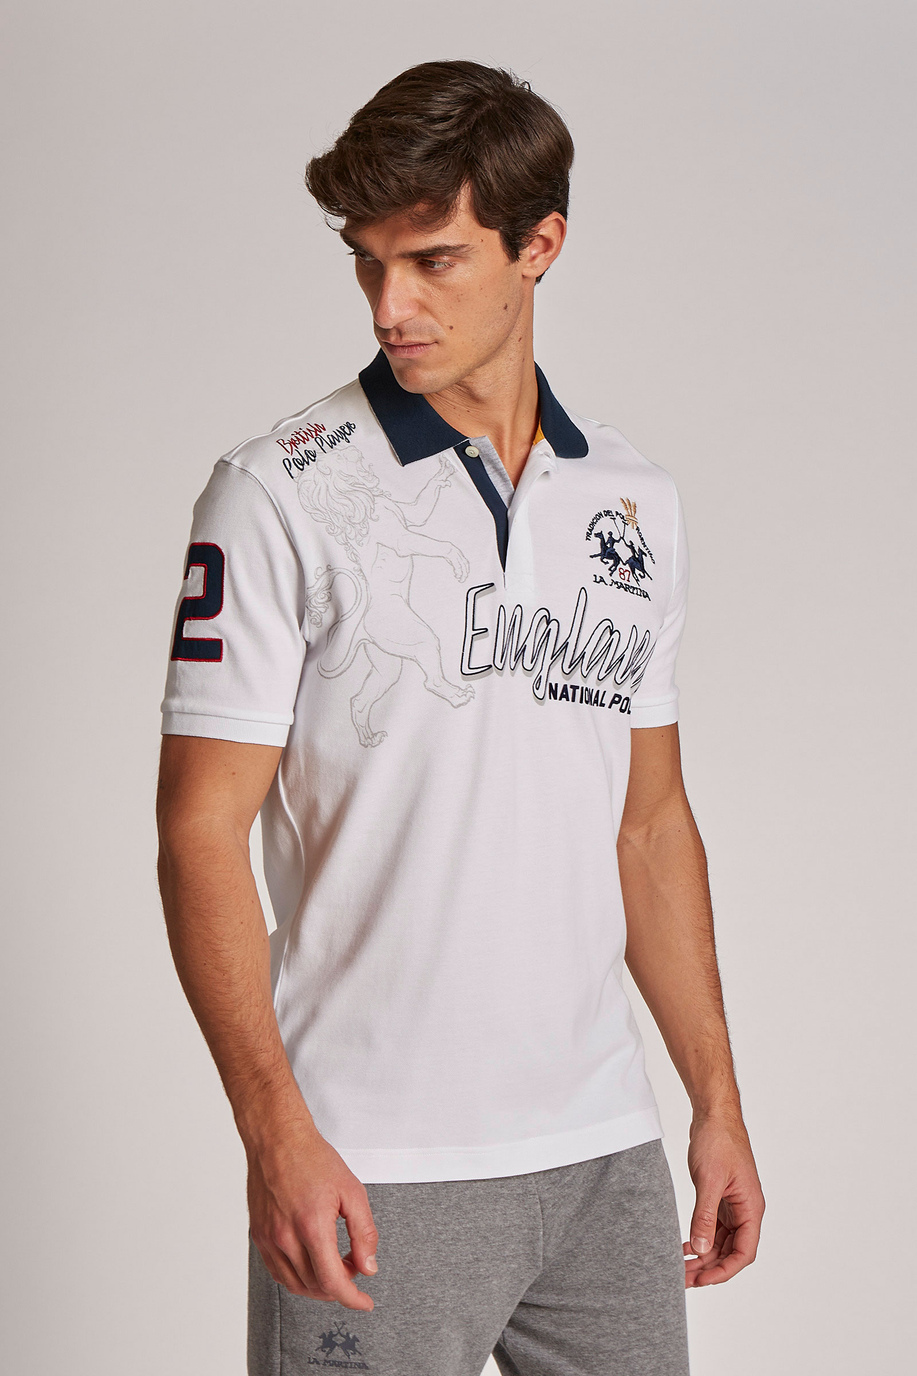 Herren-Poloshirt aus Stretch-Baumwolle mit kurzen Ärmeln im Regular Fit - SALE | La Martina - Official Online Shop